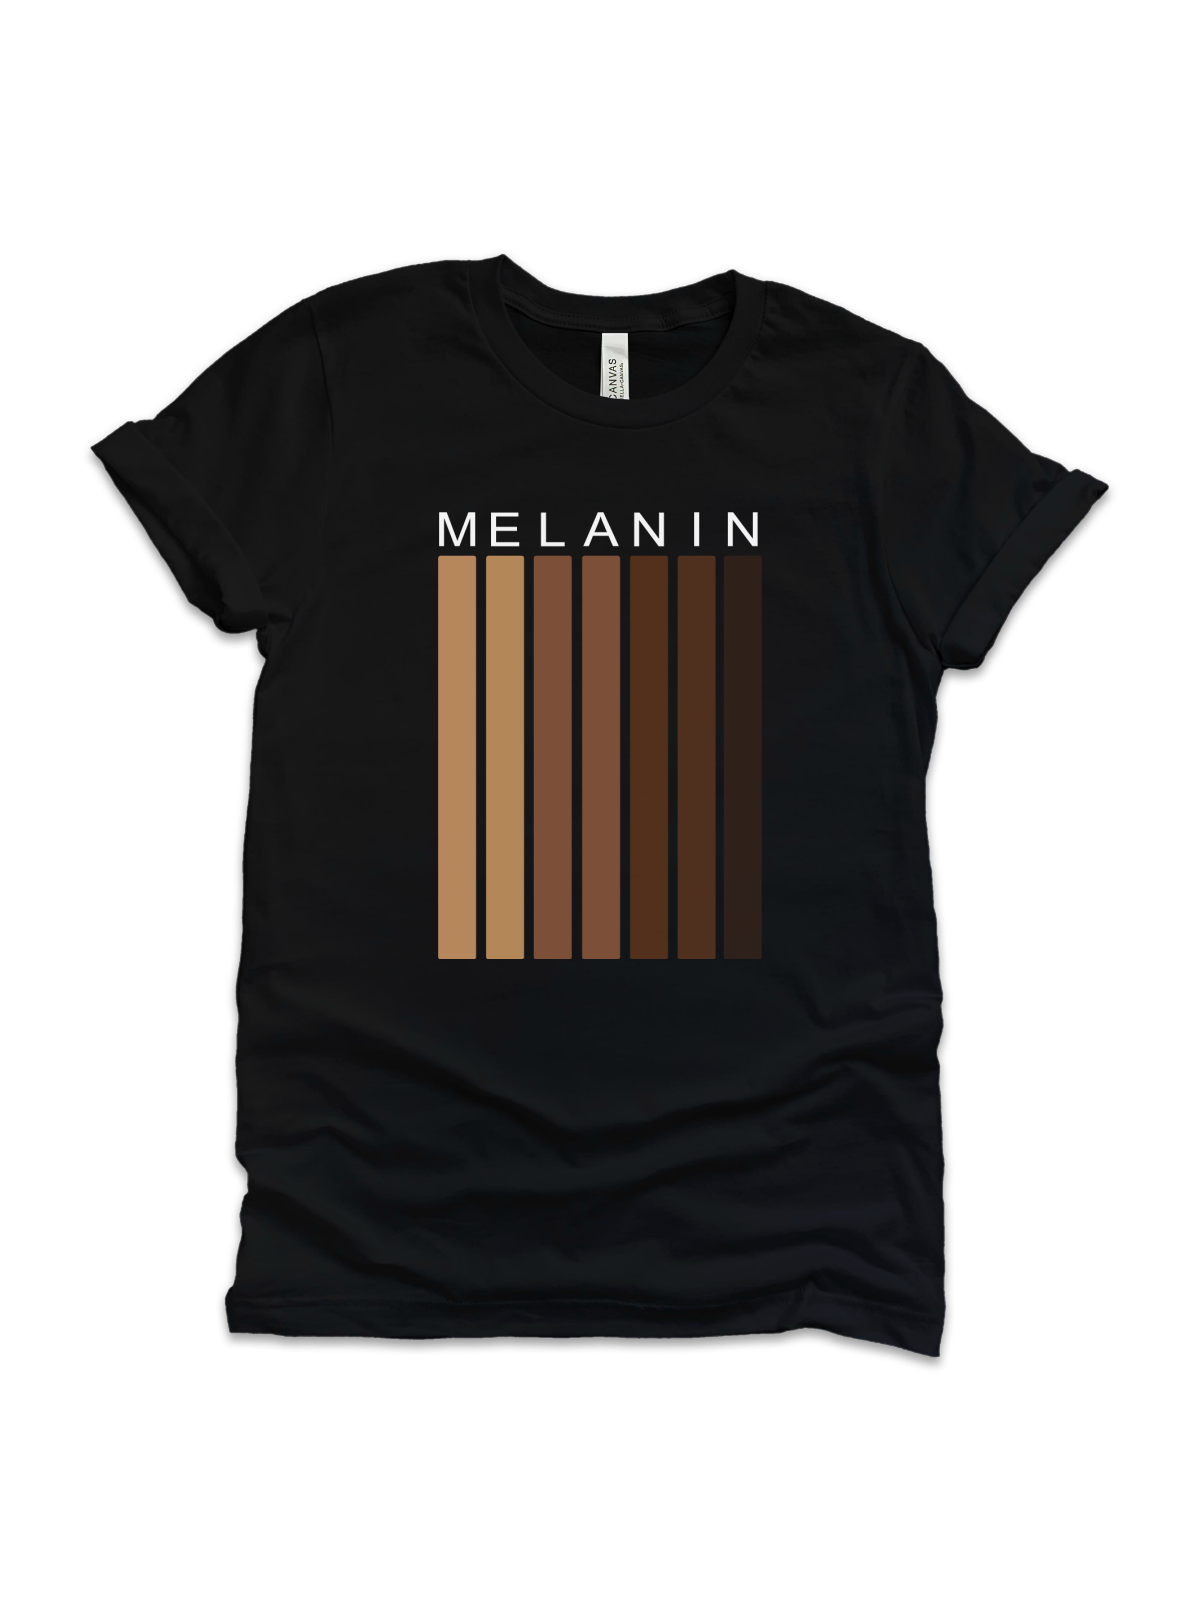 Shades of Melanin Adult Shirt